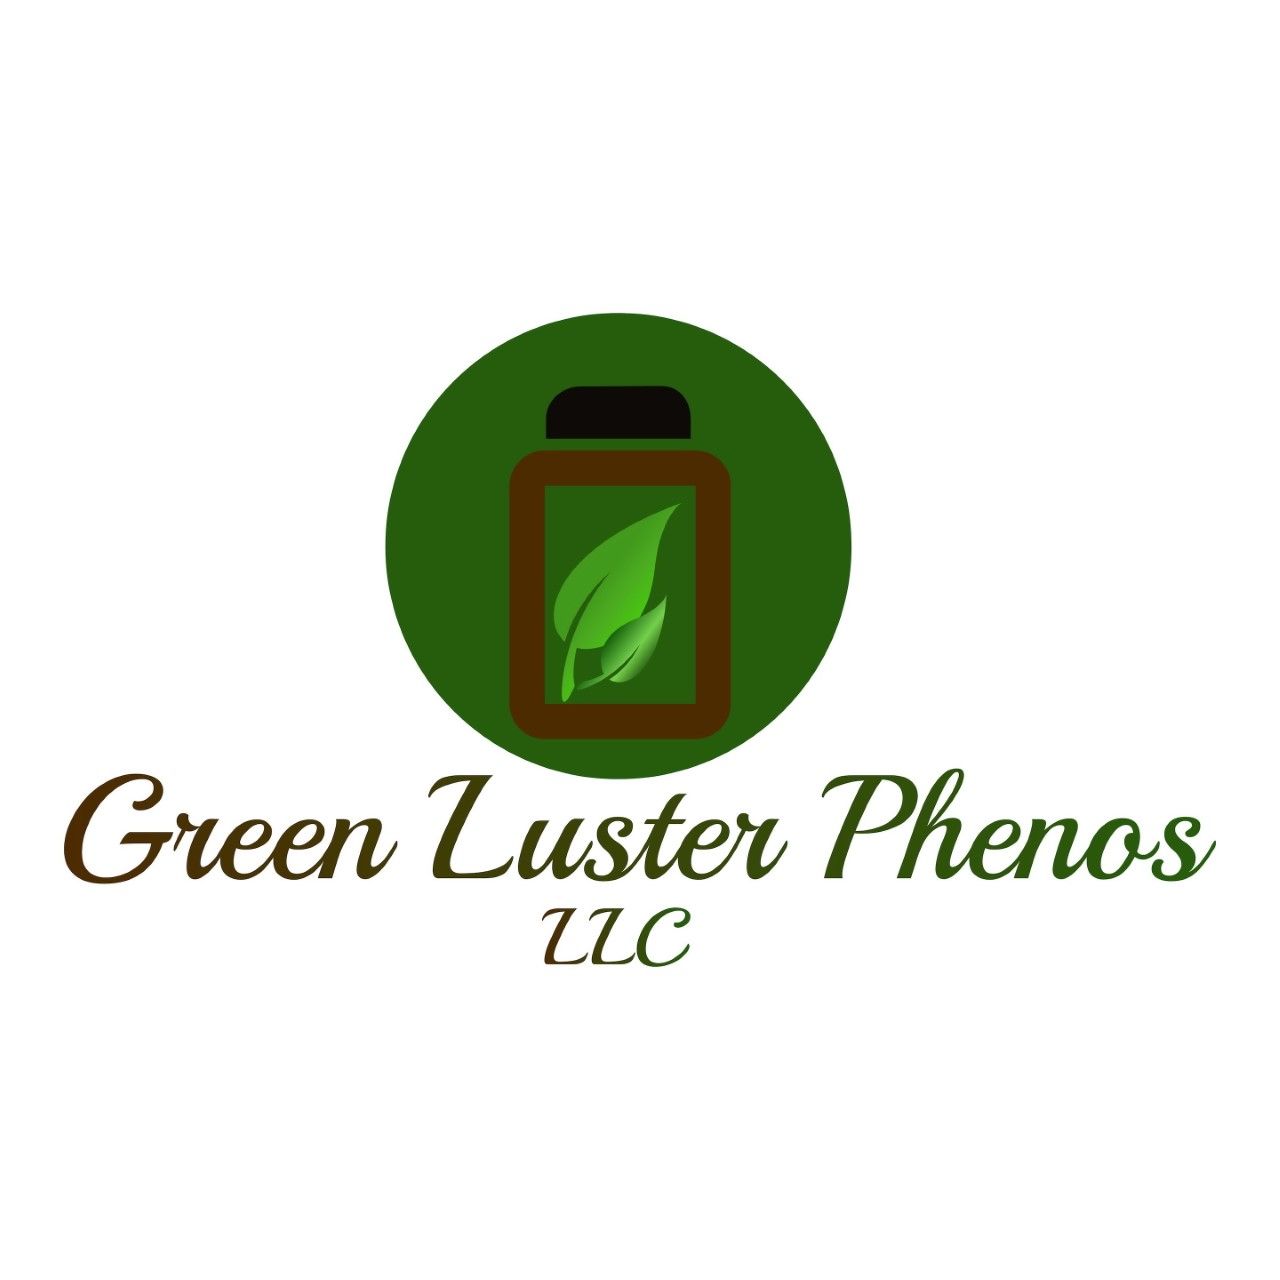 Green Luster Phenos